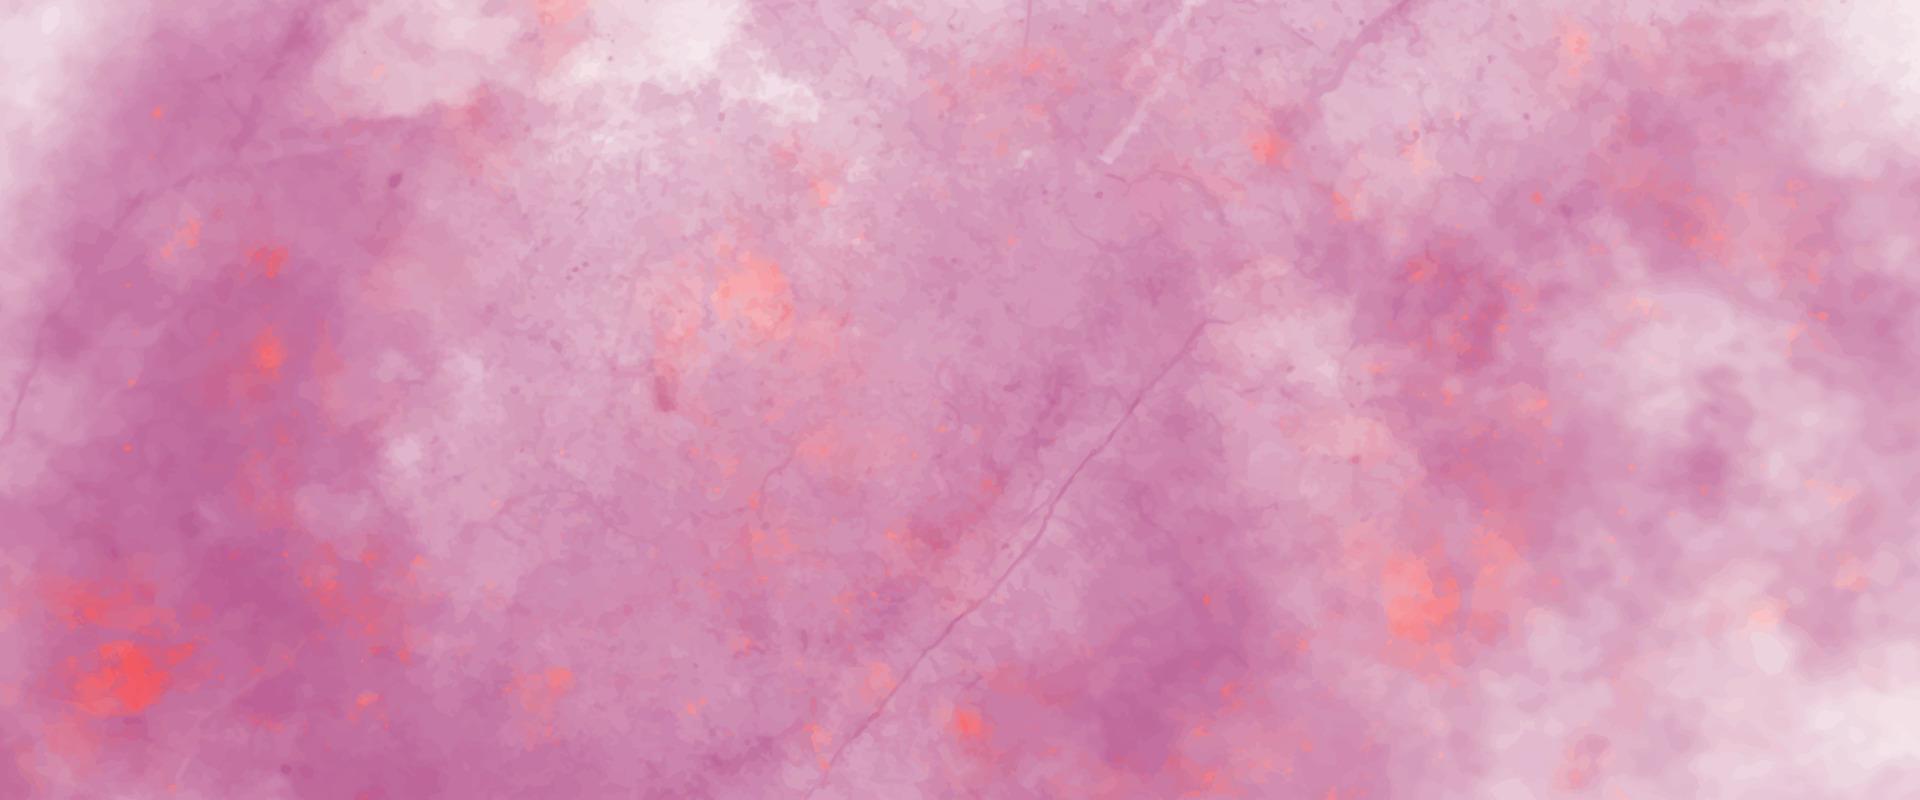 abstraktes kosmisches fuchsiafarbenes Neonpapier strukturierte Aquarell-Leinwand für modernes kreatives Design. hellrosa tintenaquarell auf schwarzem hintergrund. magentafarbenes Papier Textur Wasserfarbe. vektor